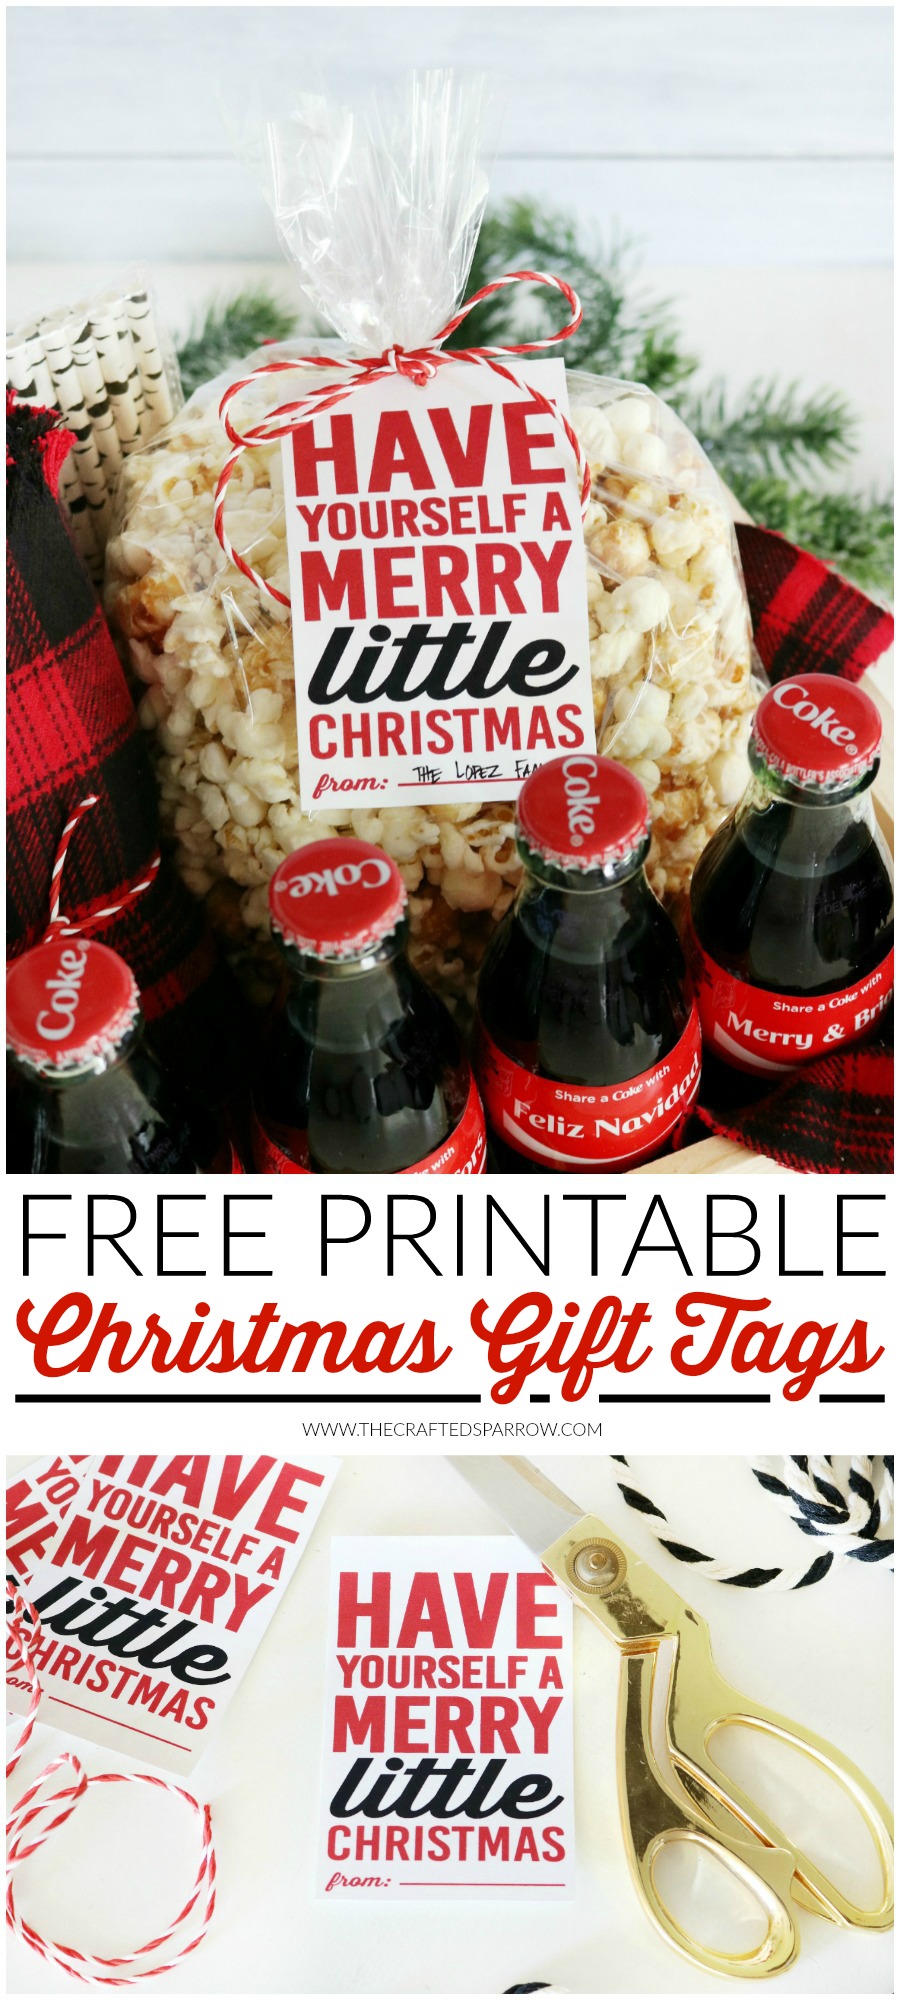 Coca-Cola Christmas Gift Basket Idea + Free Printable Christmas Gift Tags